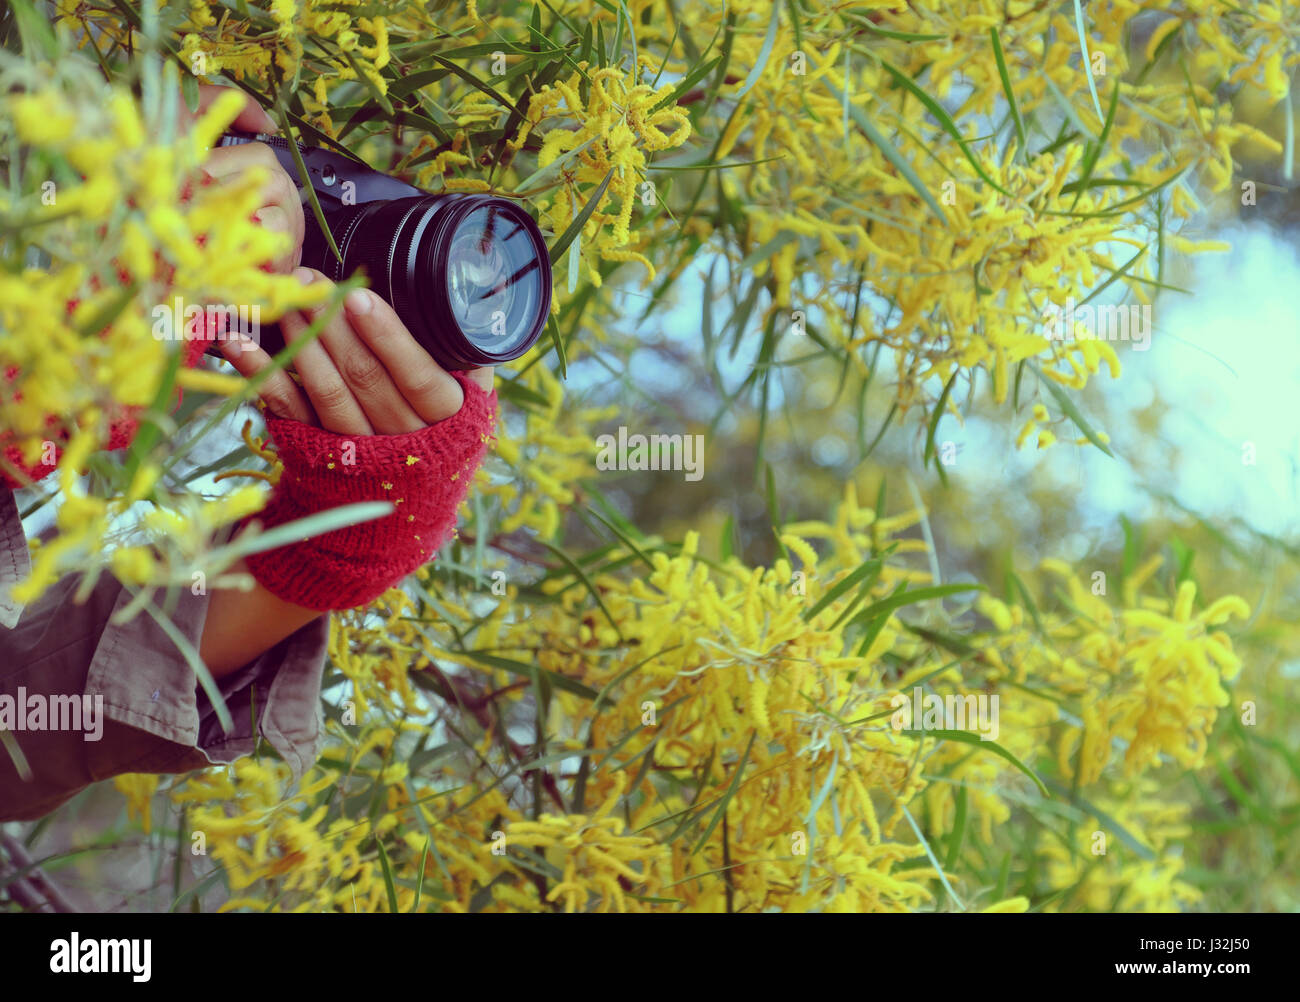 Frau Hand mit Kamera fotografieren auf gelbe Blume Hintergrund, Fotografin mit Leidenschaft in der Fotografie Stockfoto